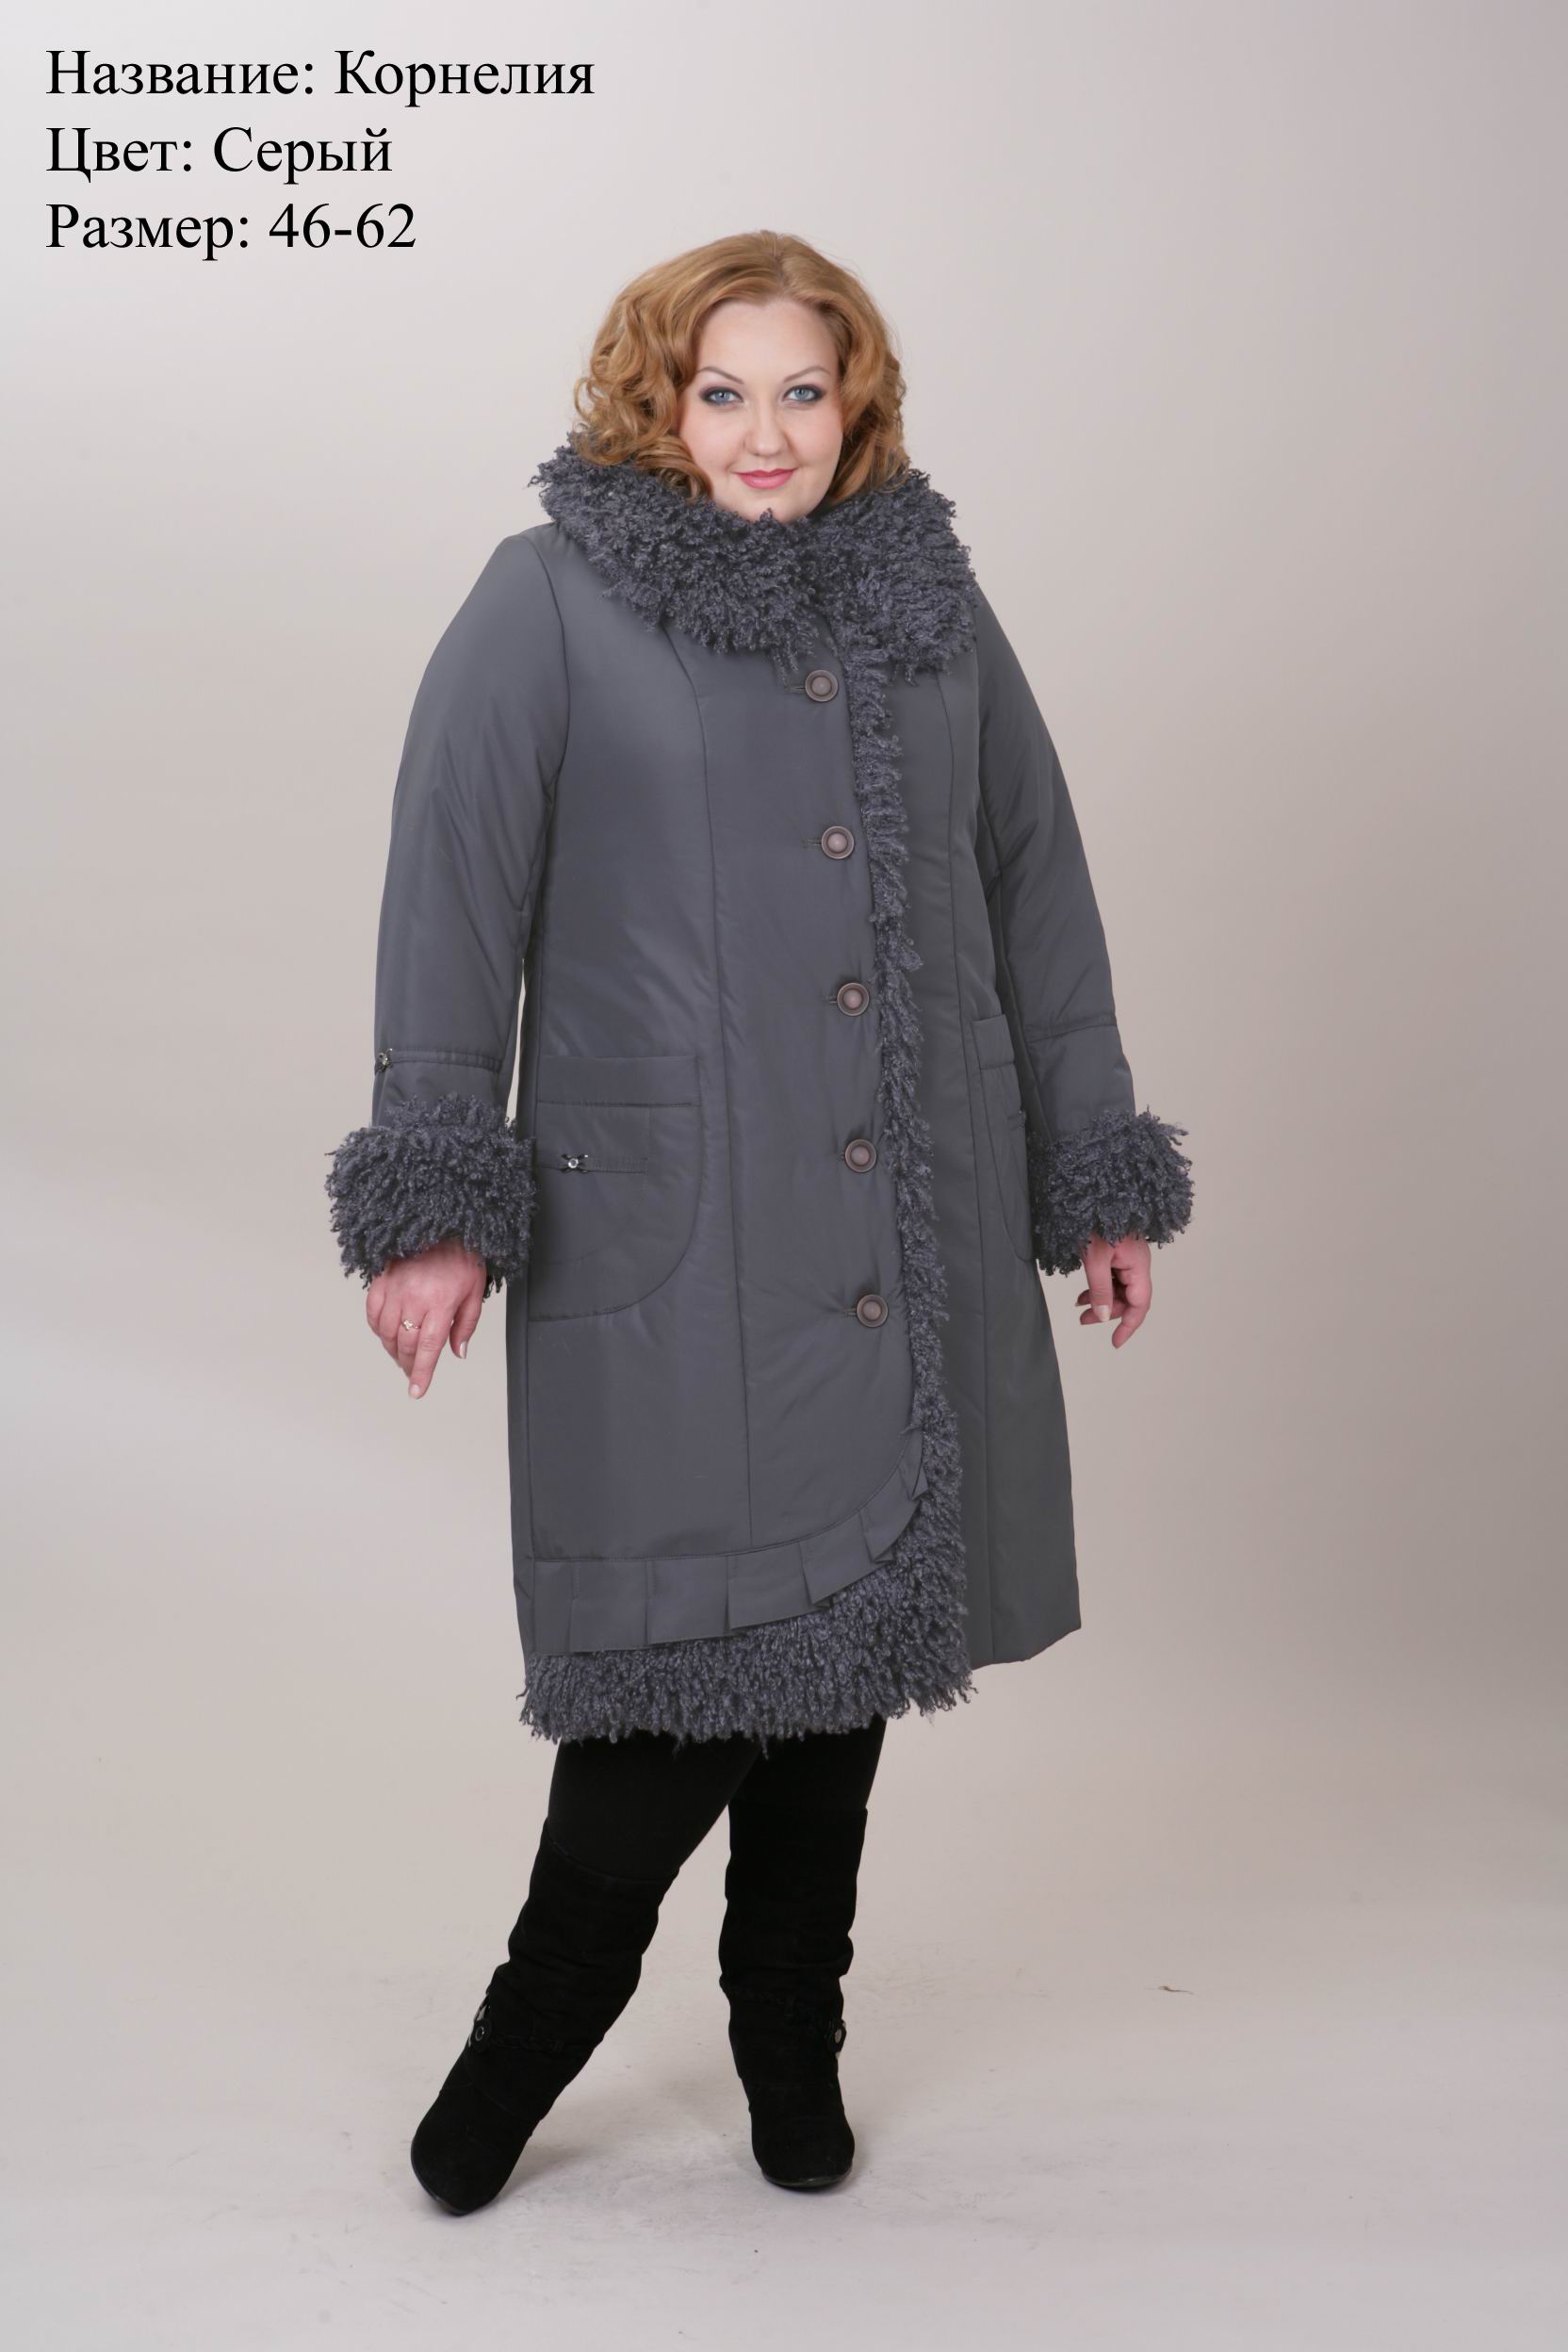 Пальто 58 размера купить. Пальто женское зимнее 62 размер Бижур. Пальто женское больших размеров. Пальто зимнее женское 58 размер. Пальто зимнее женское больших размеров.